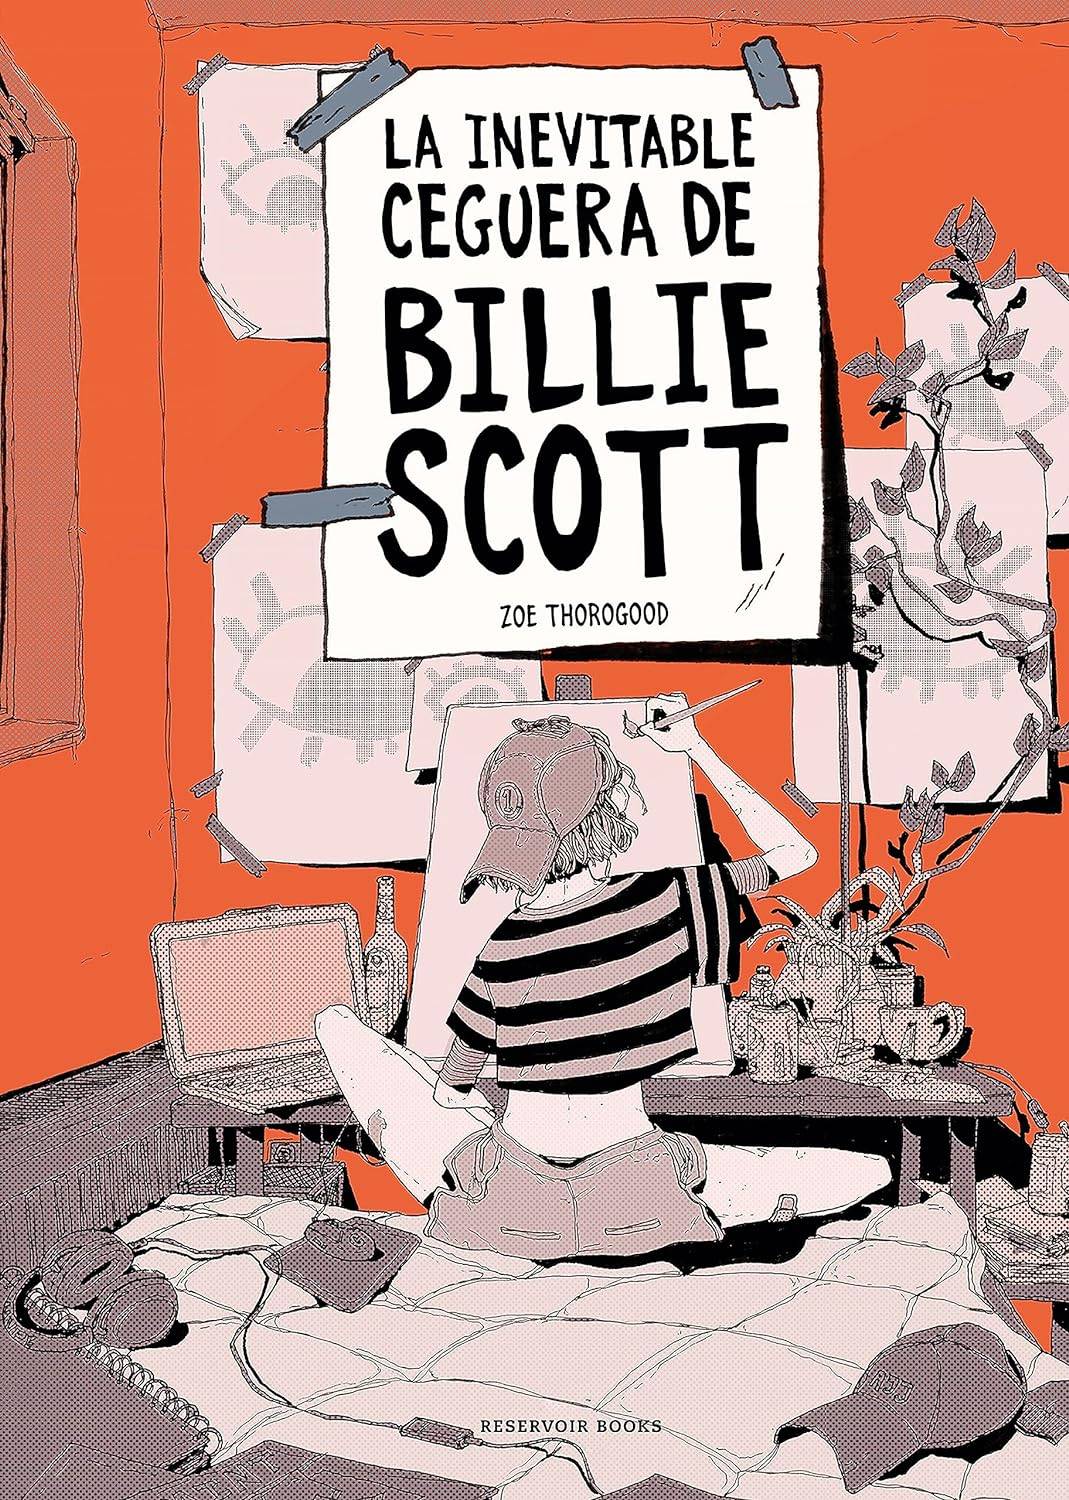 La inevitable ceguera de Billie Scott: una extraordinaria novela grafica de debut